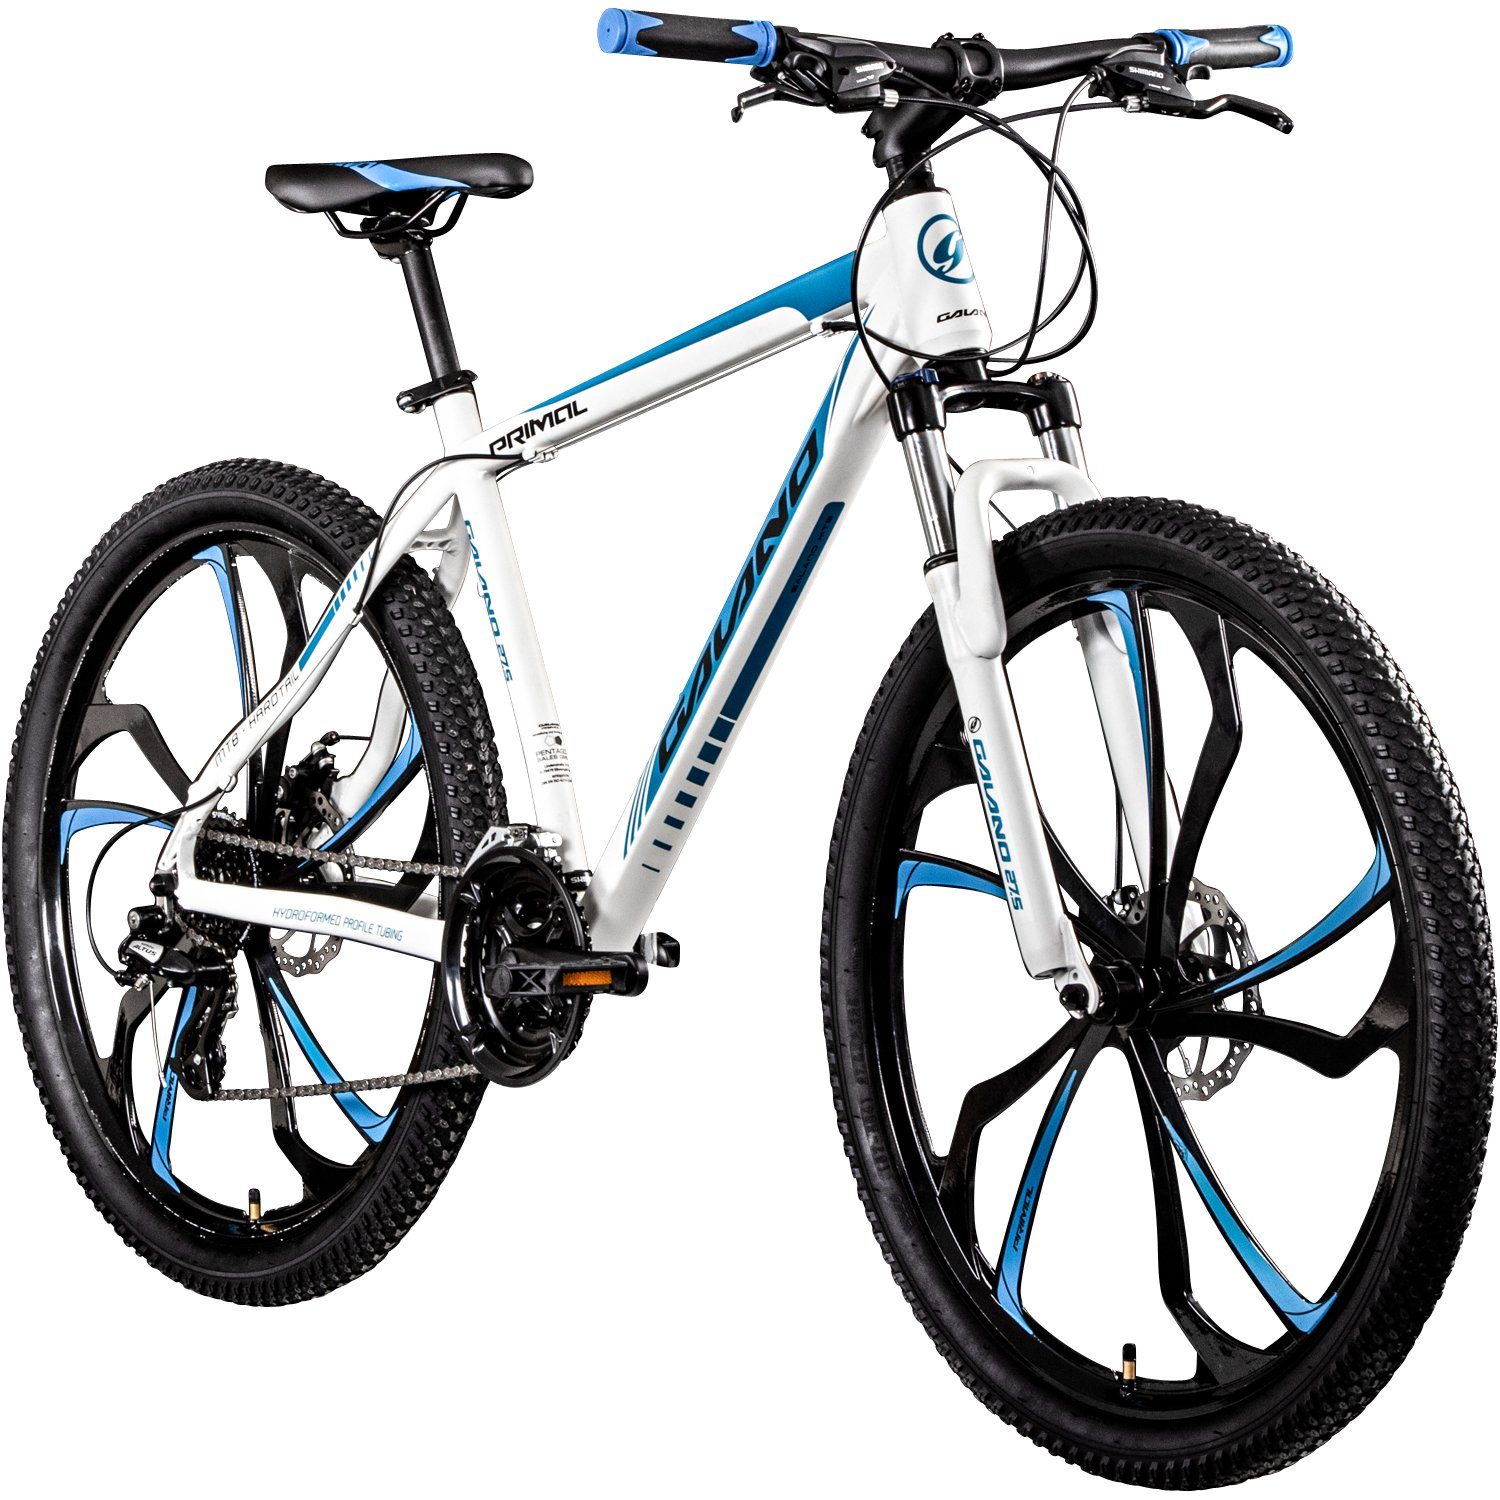 Galano Mountainbike Primal, 24 Gang, Kettenschaltung, Mountainbike Jugendliche und Erwachsene 165-185cm MTB Hardtail Fahrrad weiß/blau